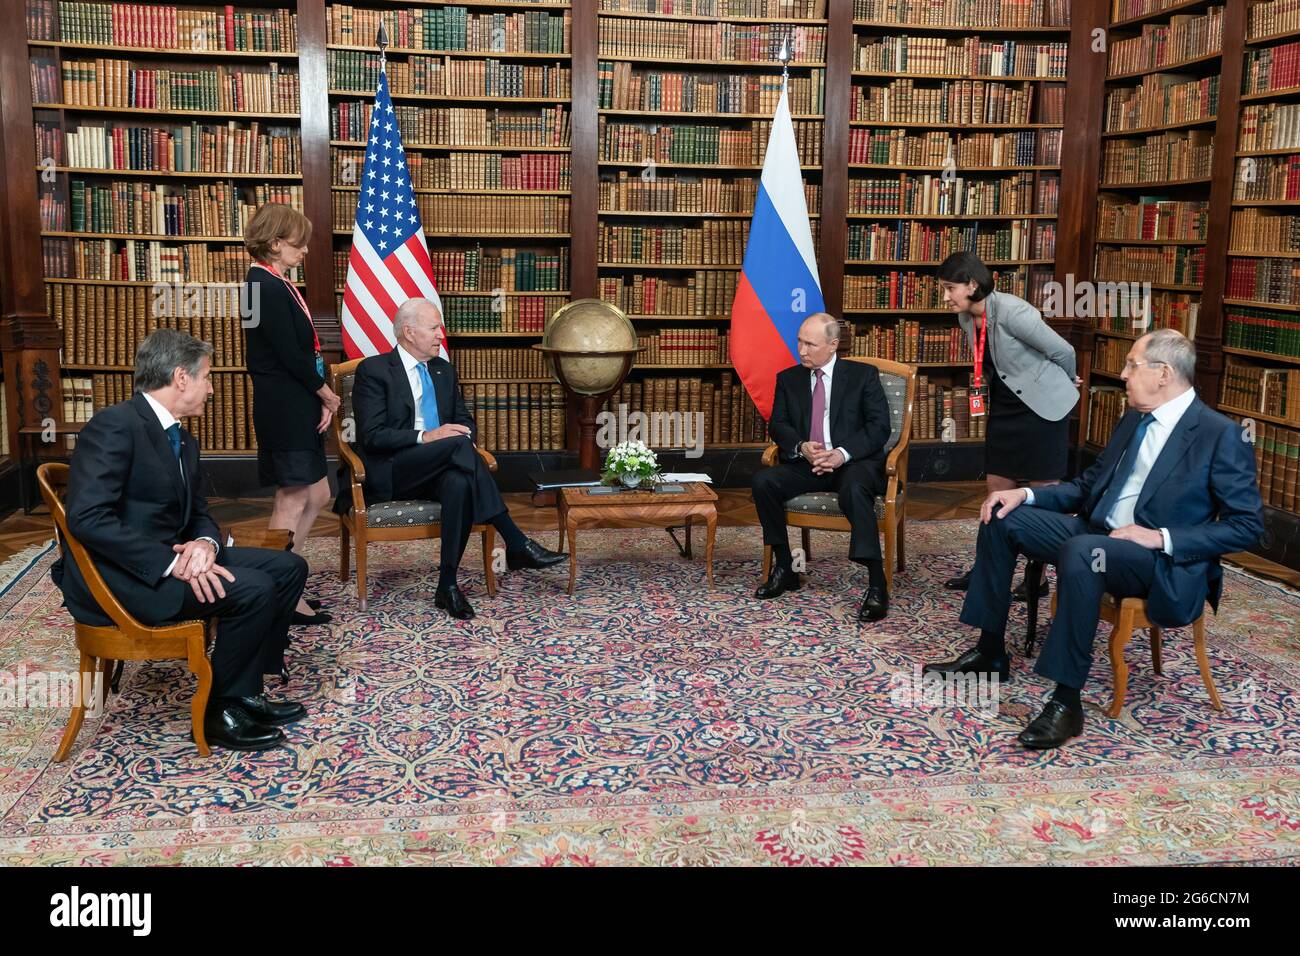 GENÈVE, SUISSE - 16 juin 2021 - le président américain Joe Biden et le président russe Vladimir Poutine participent à un tete-a-tete lors d'un Summi entre les États-Unis et la Russie Banque D'Images